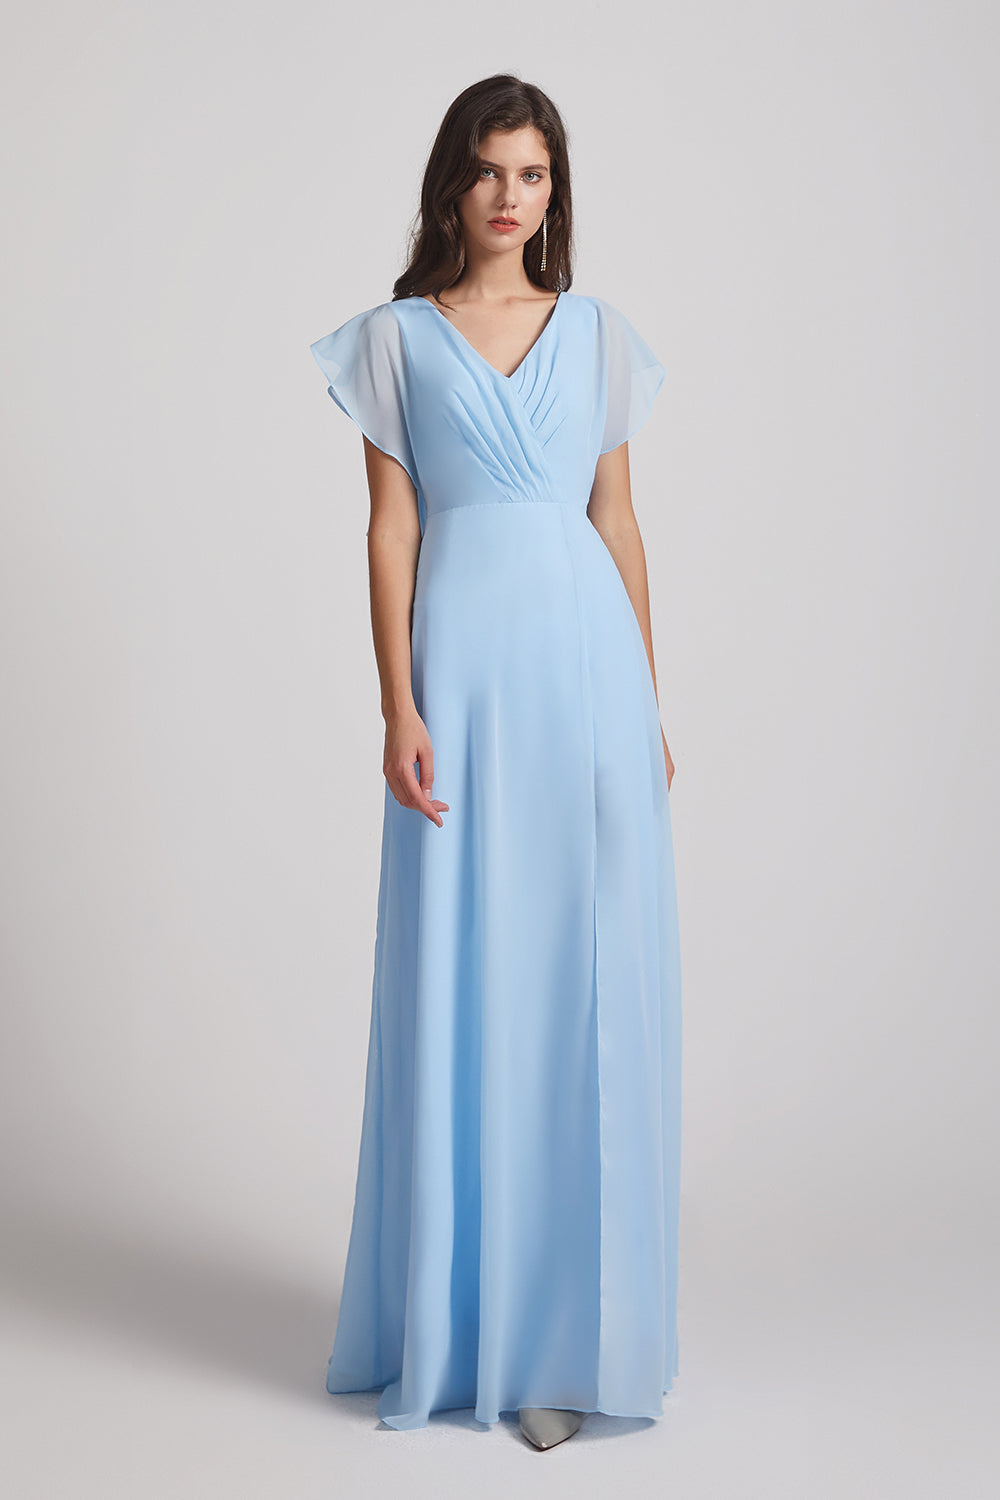 Alfa Bridal Light Sky Blue V-Neck Chiffon Long Backless Bridesmaid Dresses with Side Slit (AF0071)